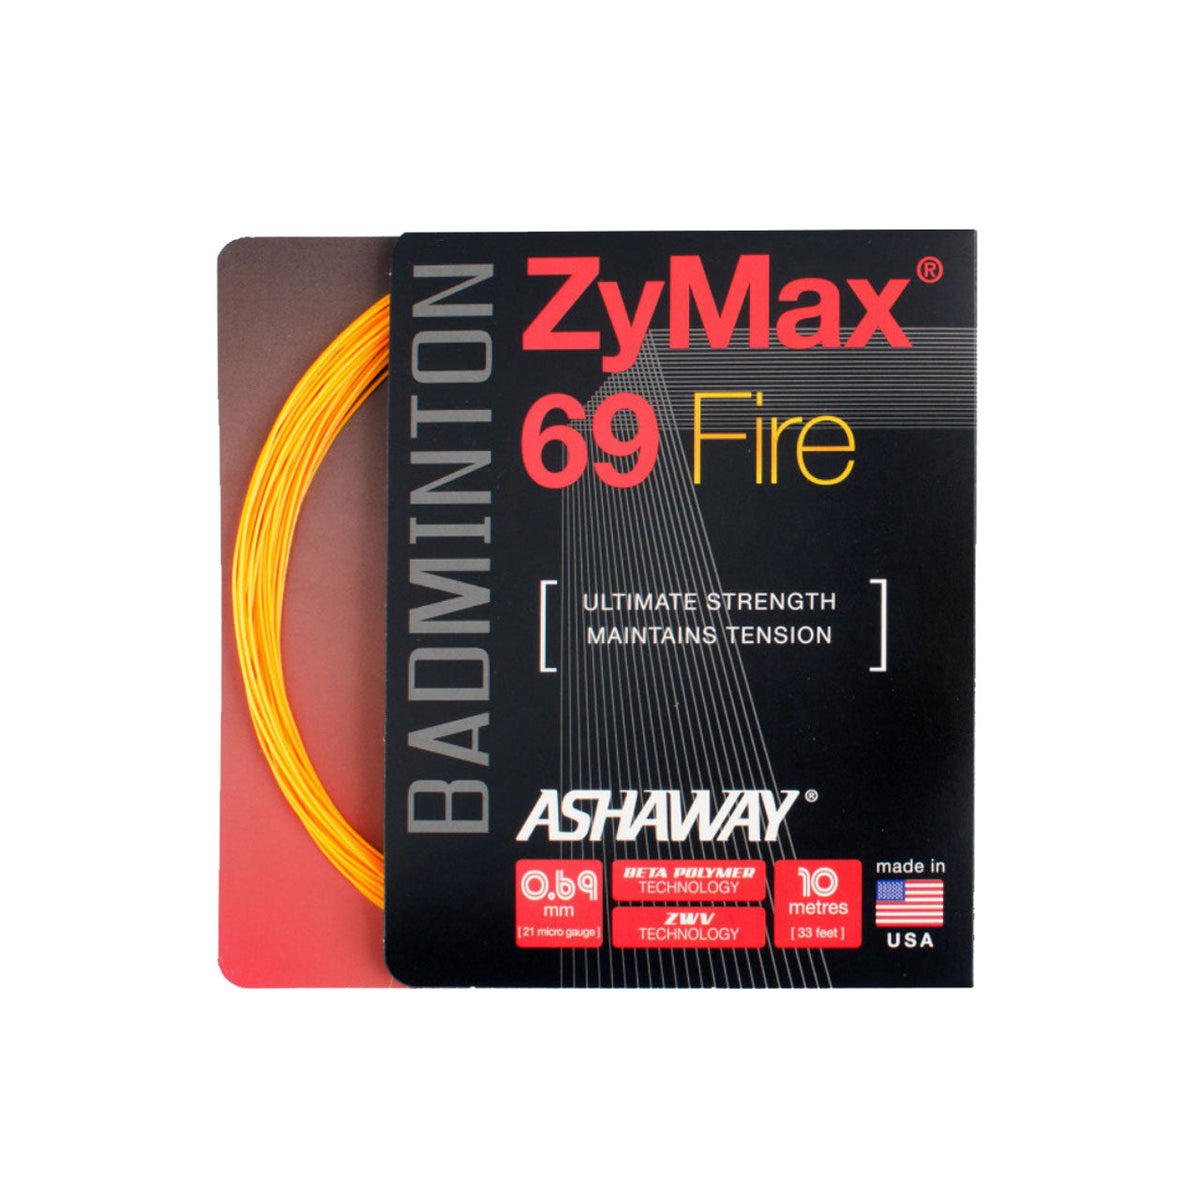 Ashaway ZyMax 69 Fire String (10m Set) White